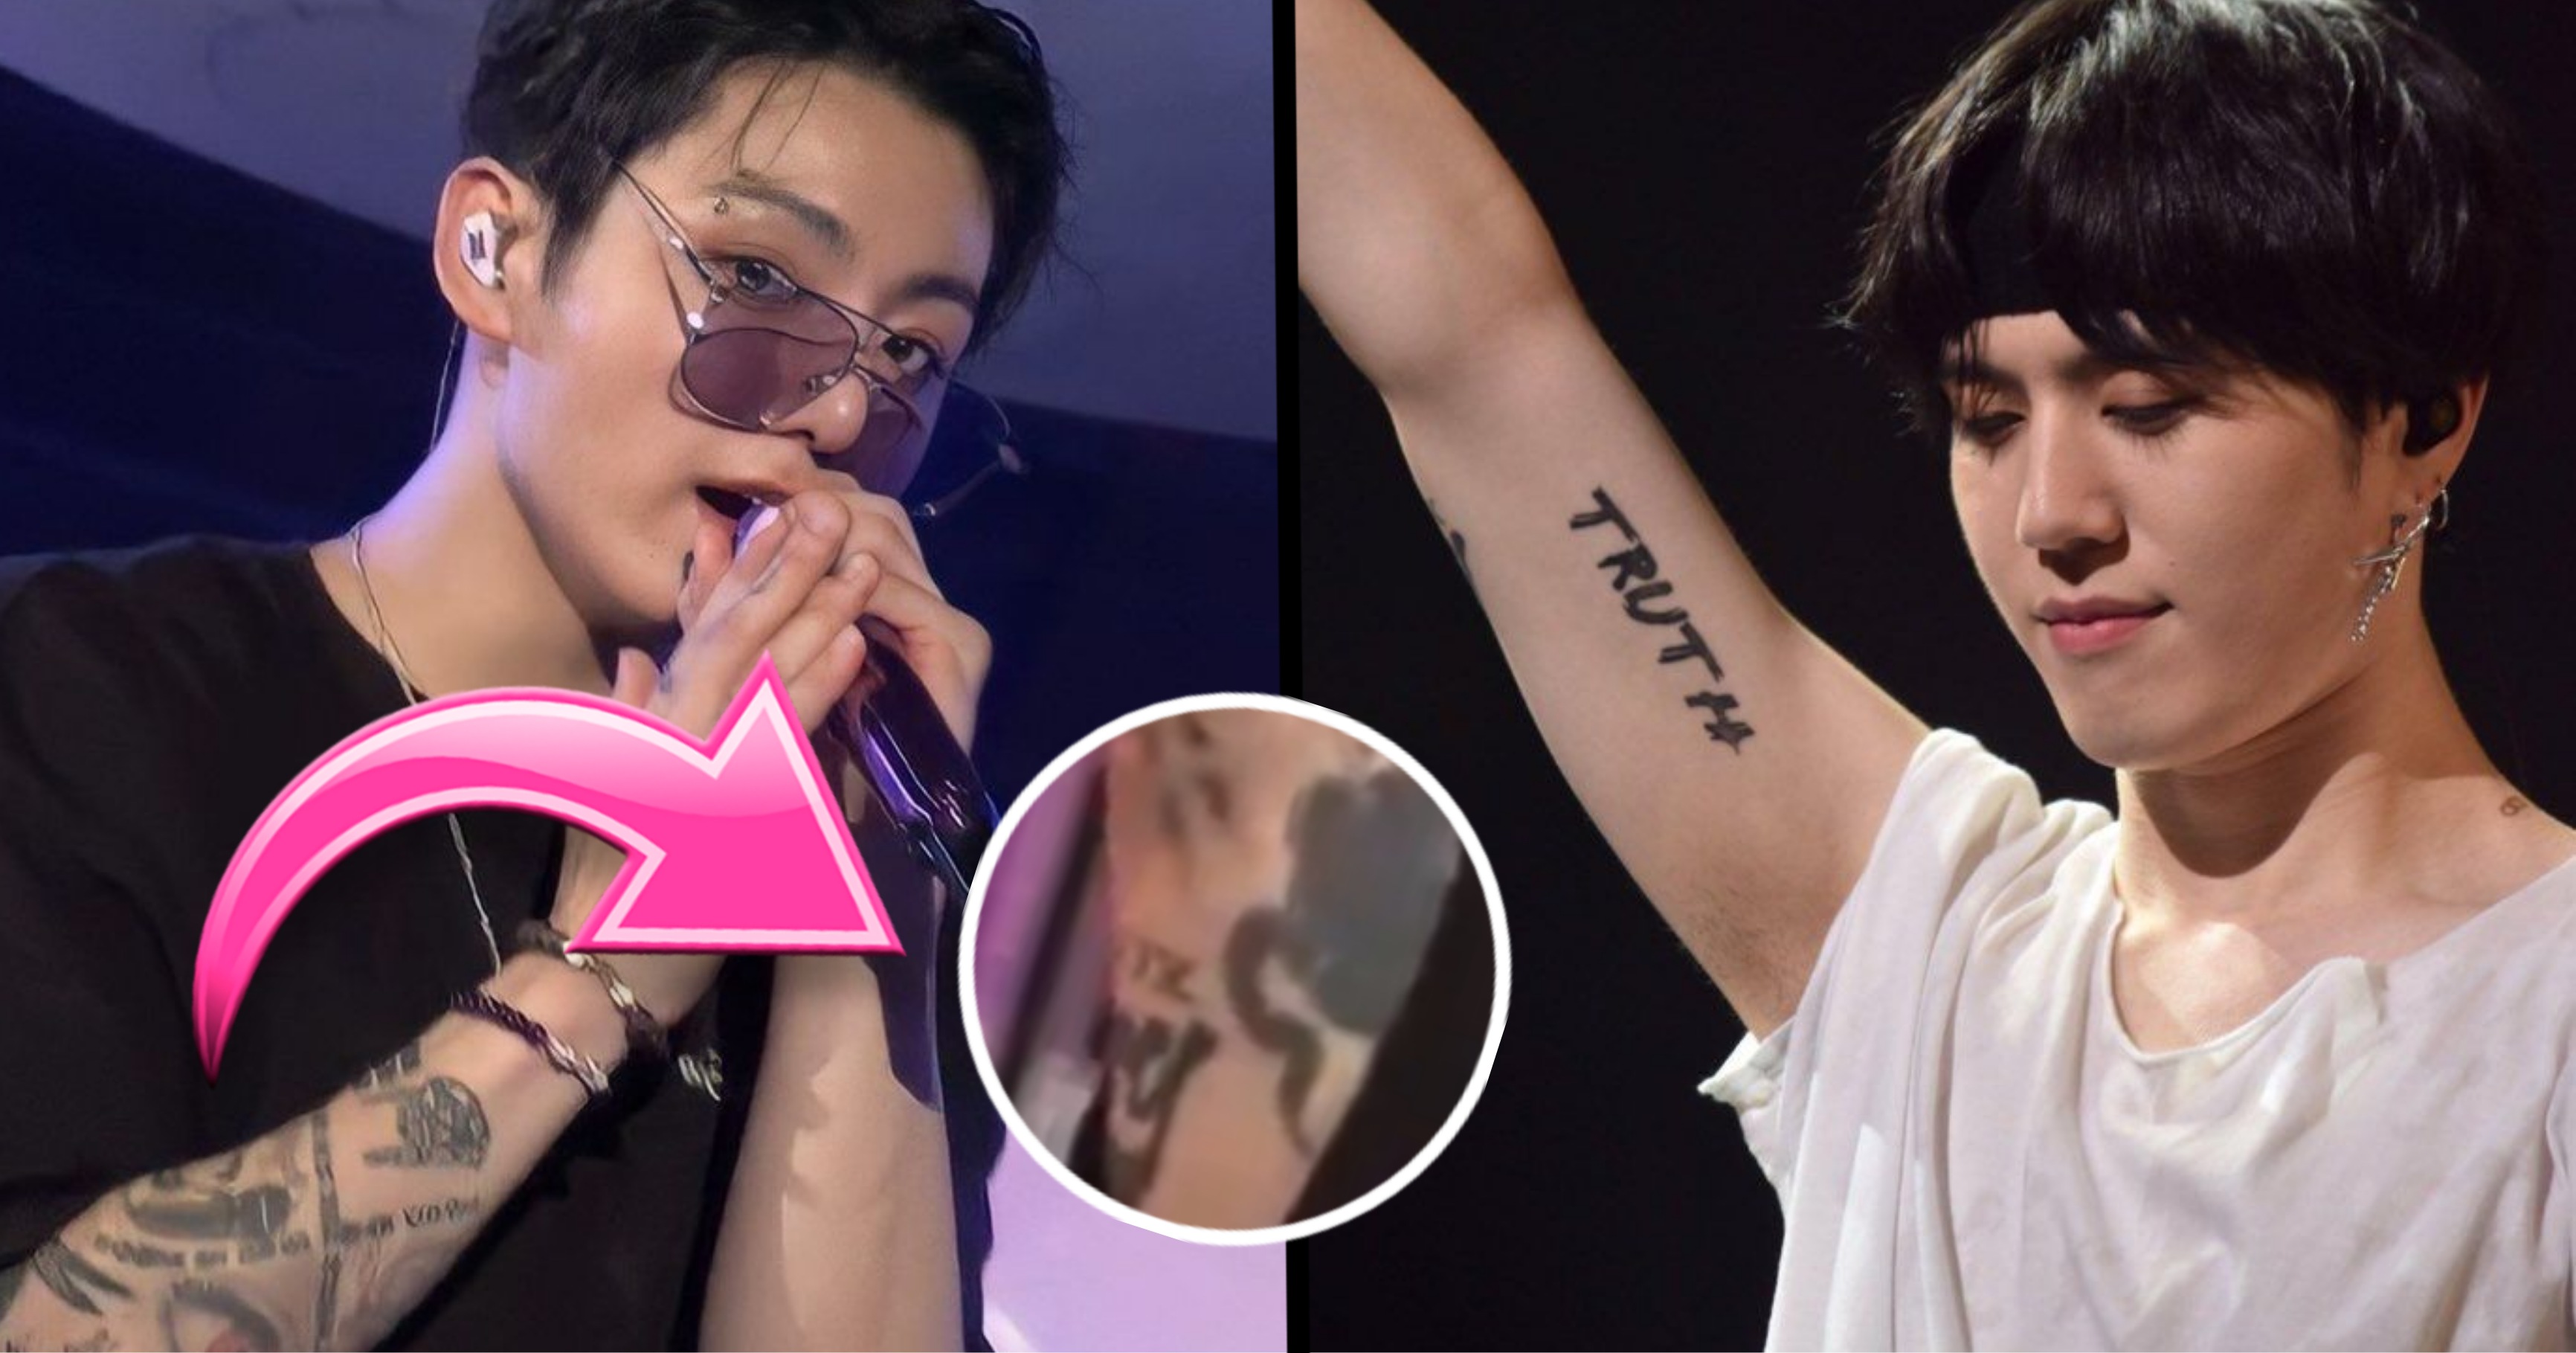 Polyc (jungkook's tattoo artist who also tattooed jimin and bts' members)  got JM & JK tattooed on his arm??? and jk having polyc tattooed… | Instagram